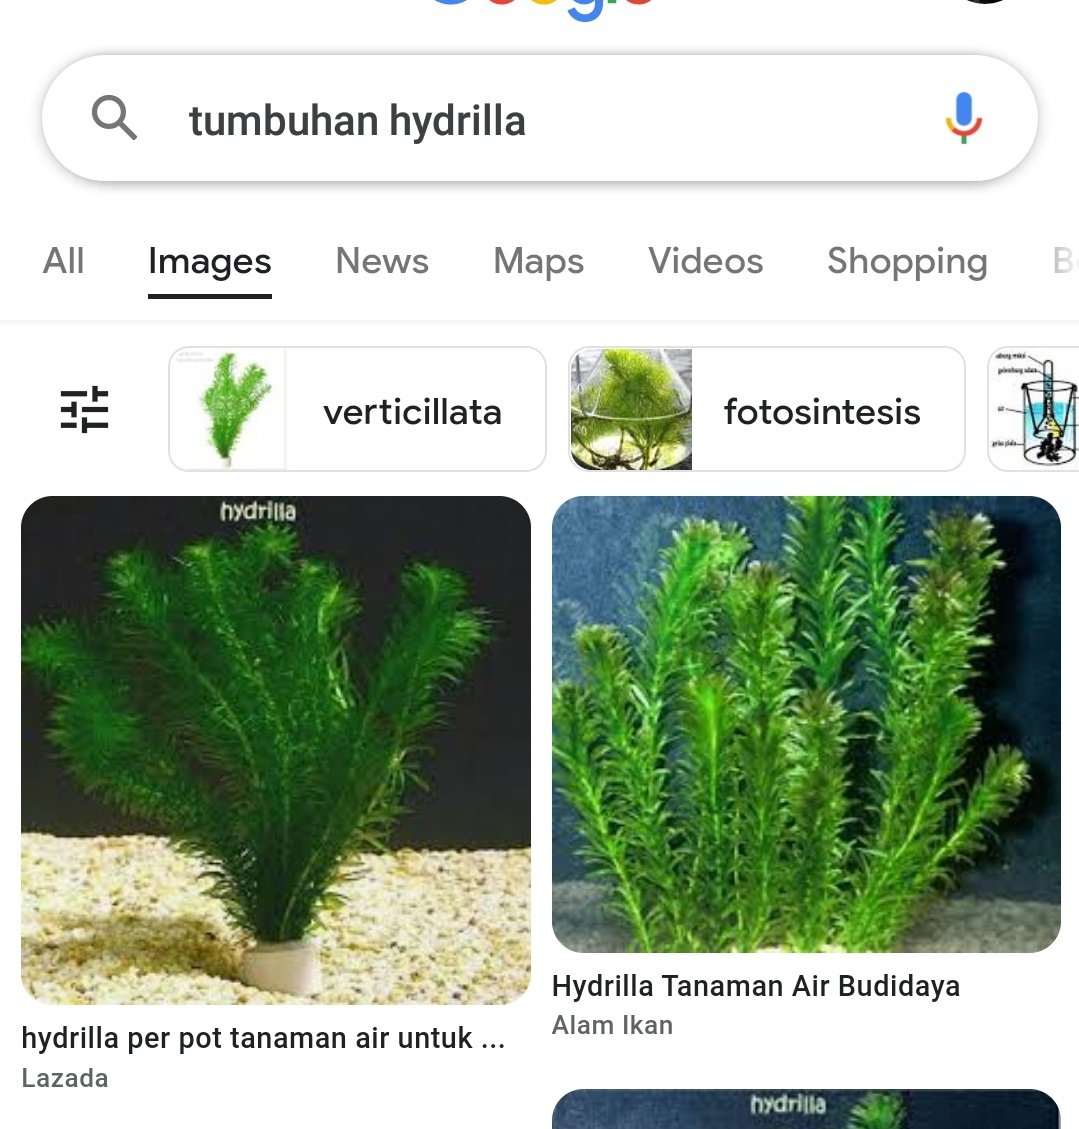 sch! kelasku barusan disuruh bawa tumbuhan hydrilla kya gini buat praktikum fotosintesis, ada yg tau gak belinya di mana? dibawanya senin ini soalnya 😭😭